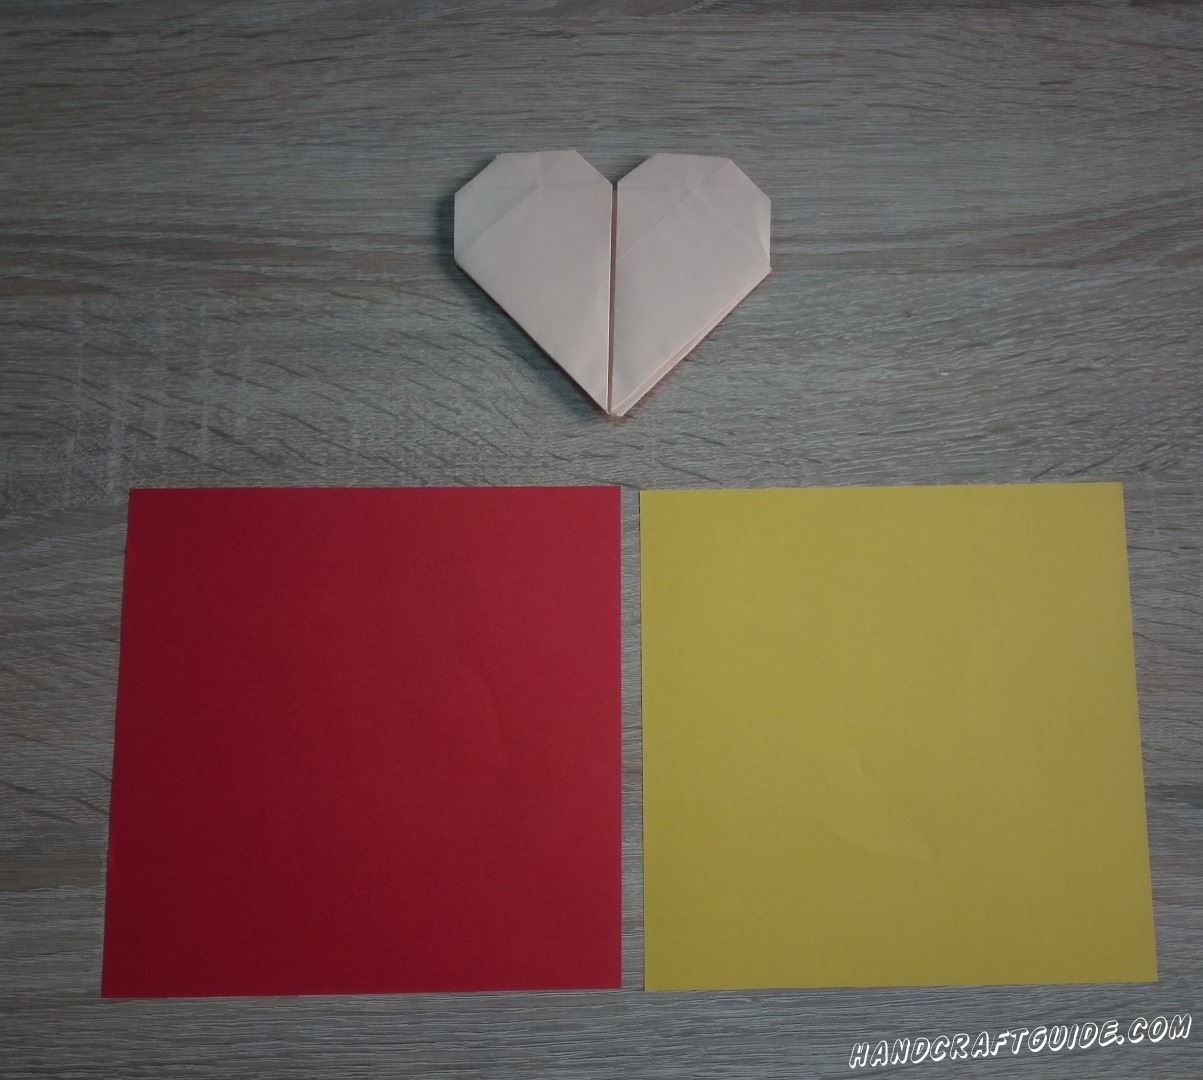 Берём цветную бумагу квадратной формы, как для оригами